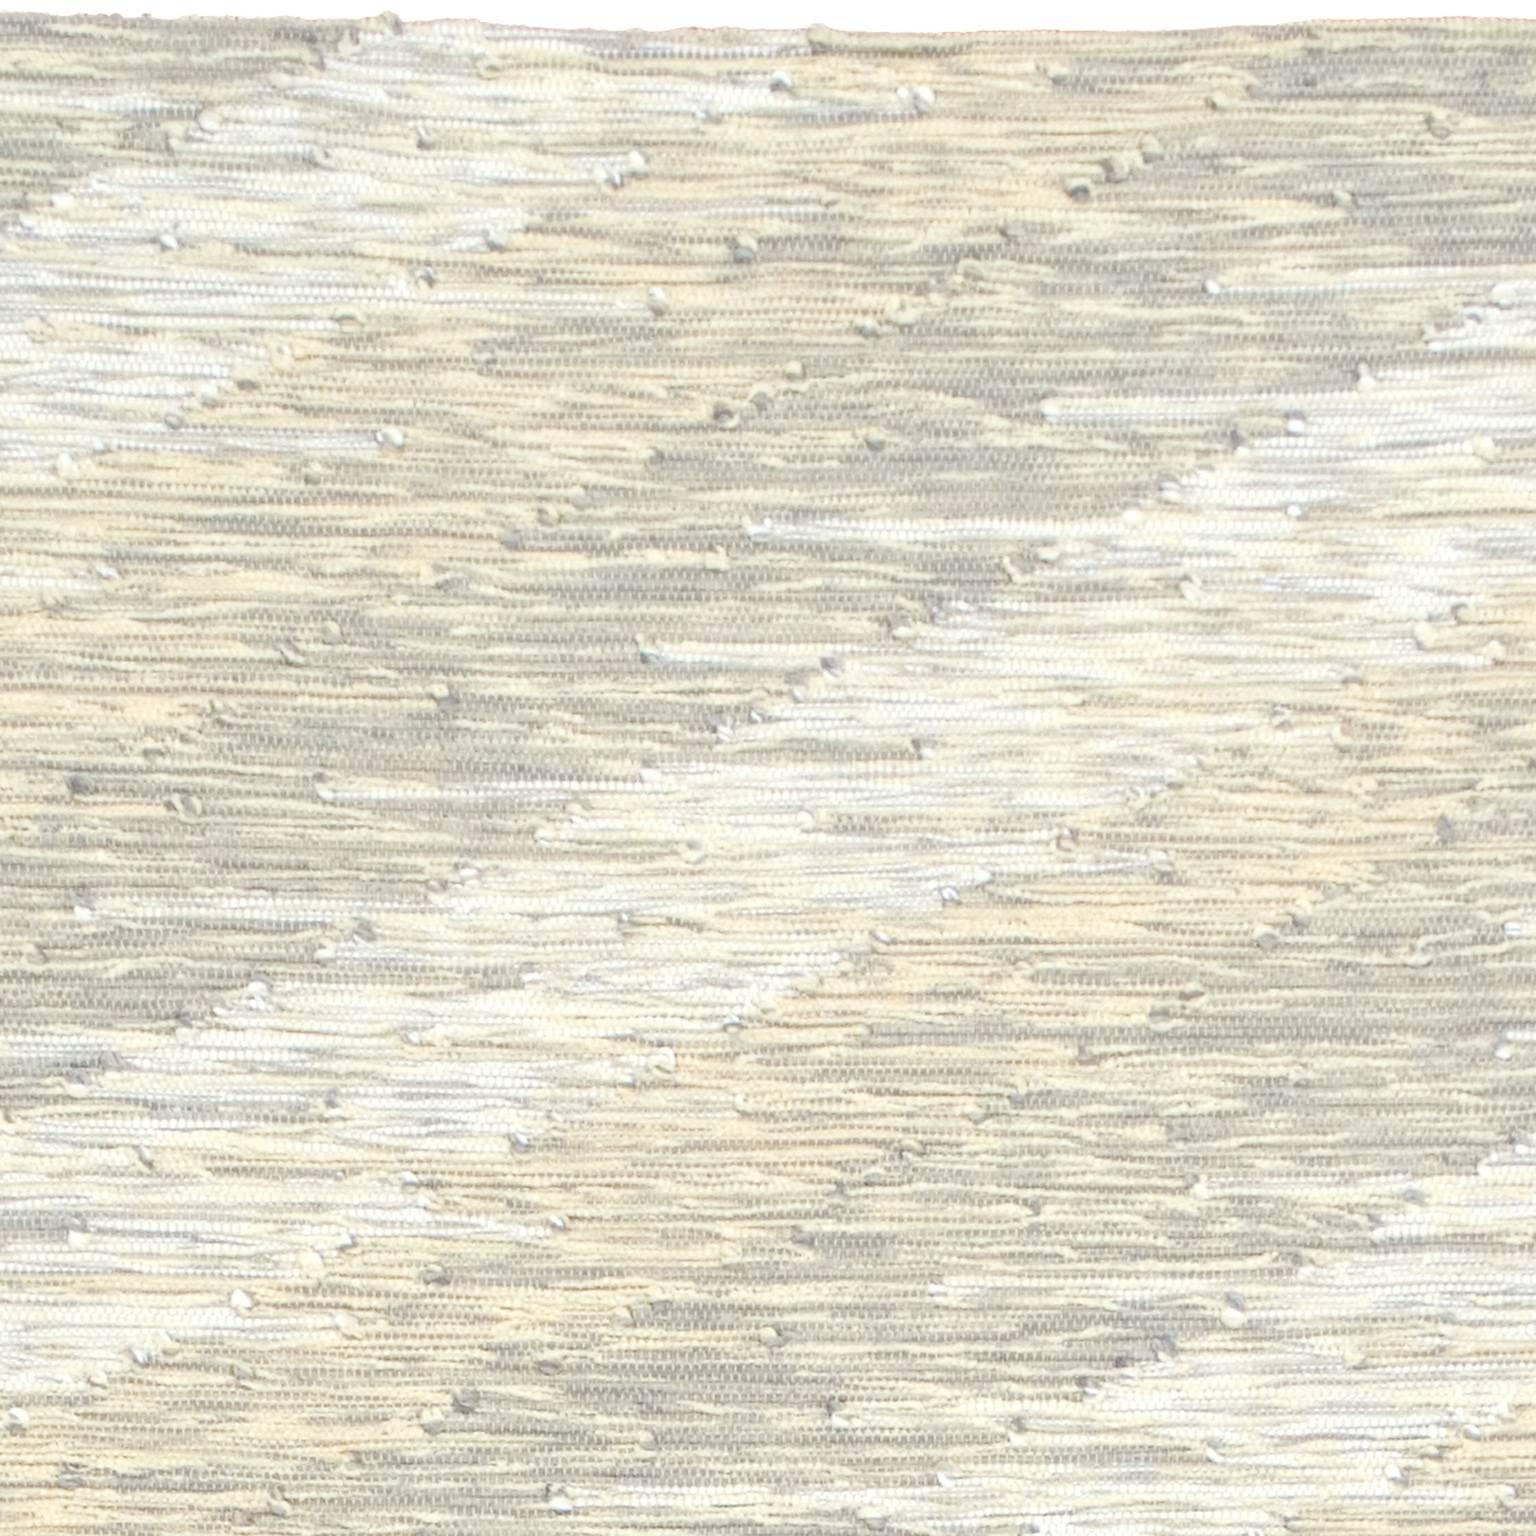 Hand-Woven Contemporary Italian 'Intreccio Diagonale' Carpet